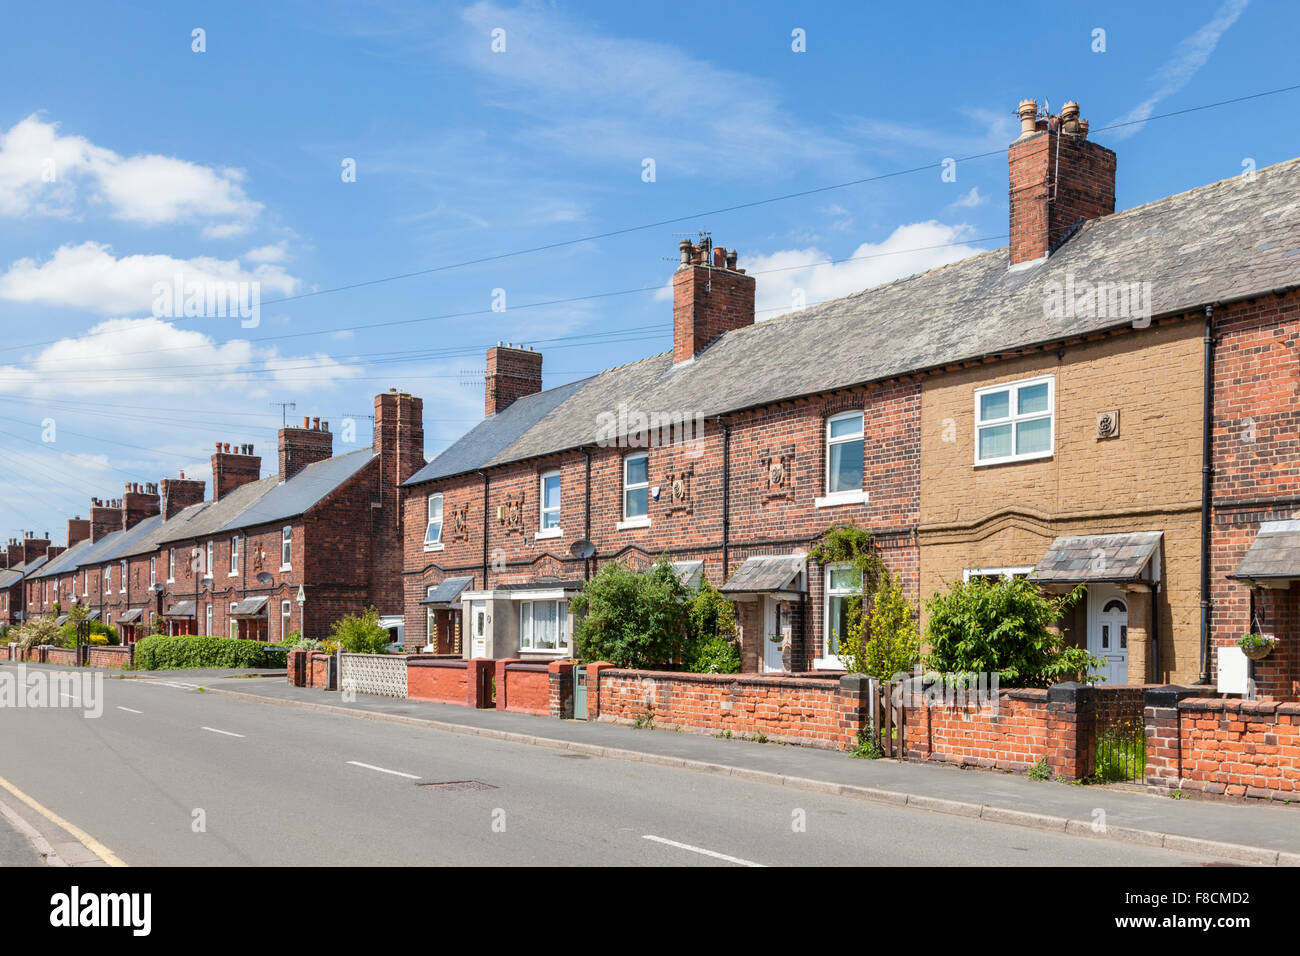 Des maisons. Les logements construits en terrasses pour les travailleurs de la mine dans une rue de village Bestwood, Nottinghamshire, Angleterre, RU Banque D'Images